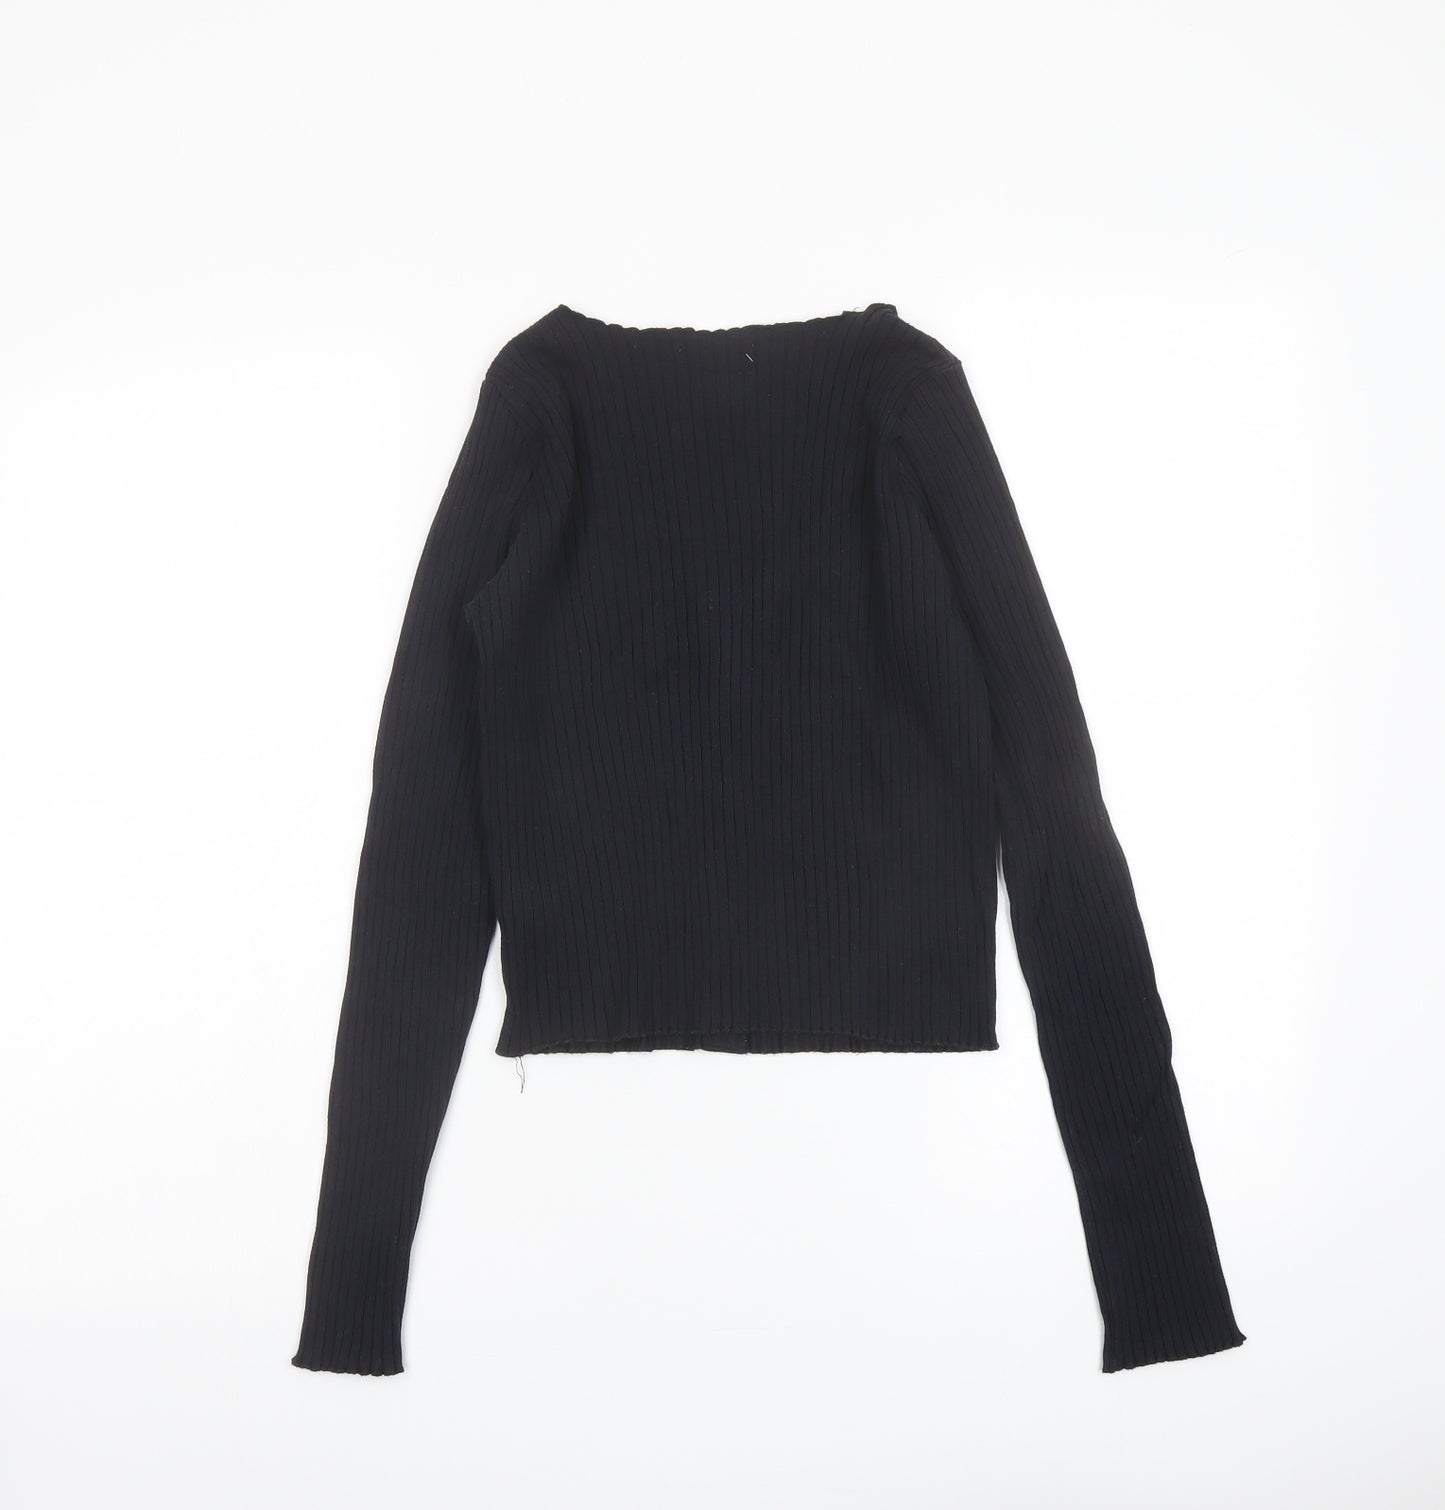 Topshop Womens Black Cotton Basic T-Shirt Size 12 Scoop Neck